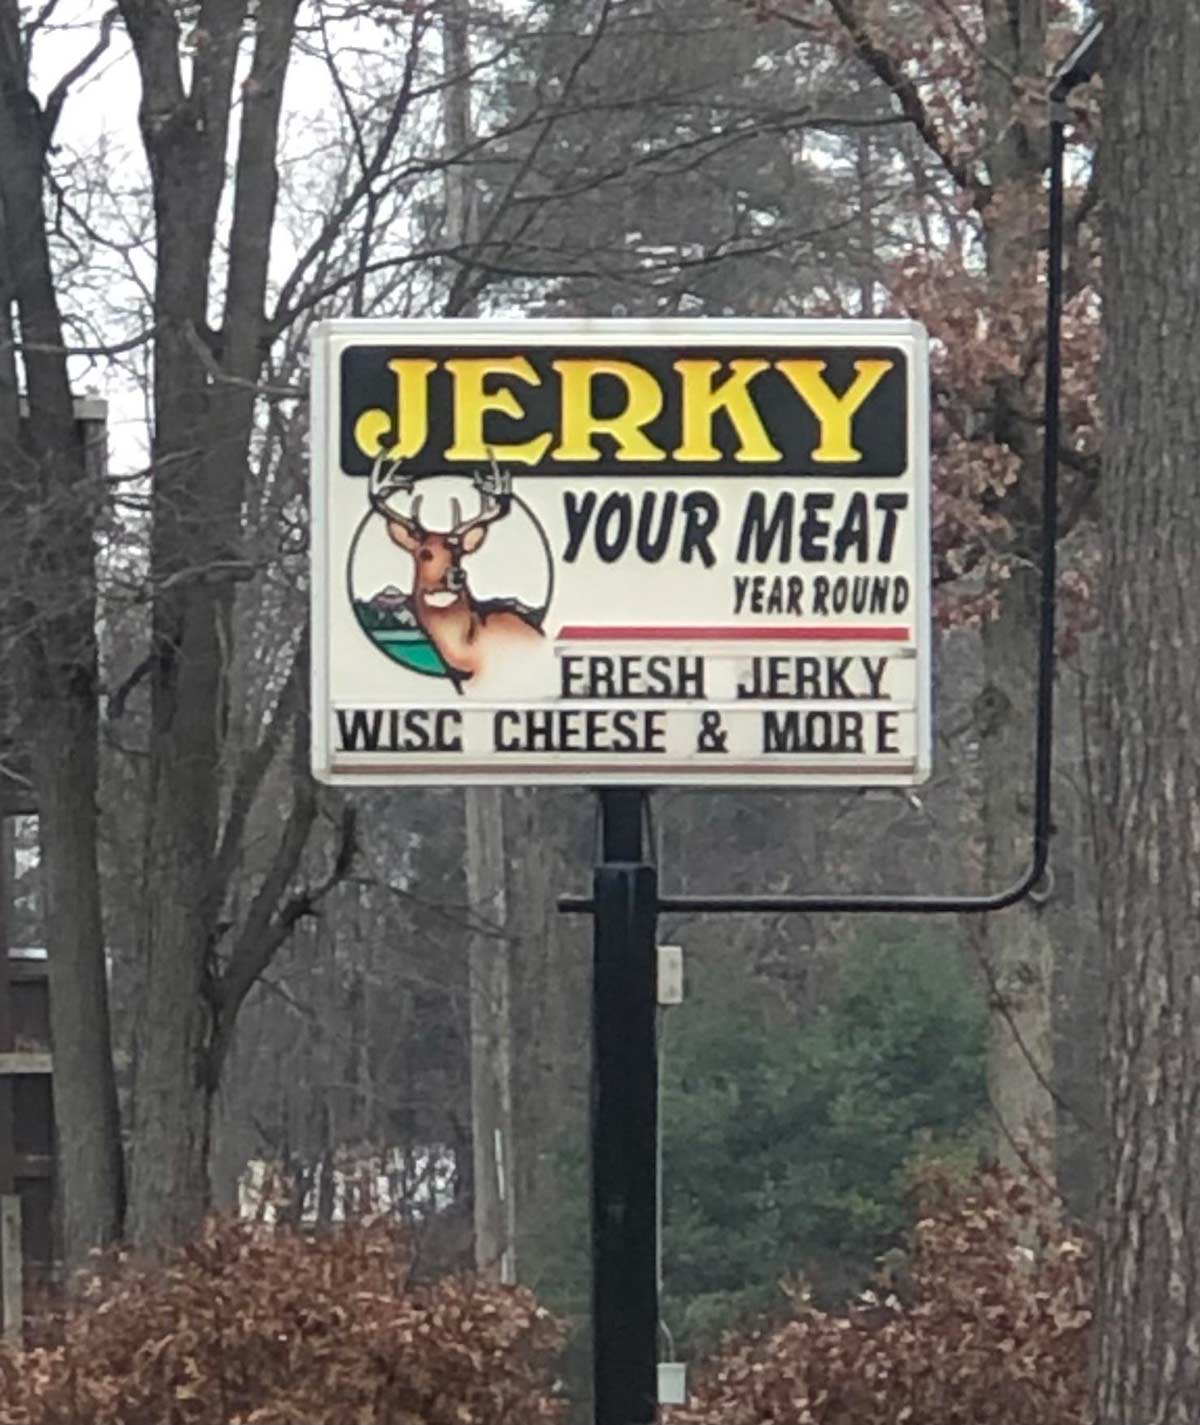 Fine establishment in rural Michigan